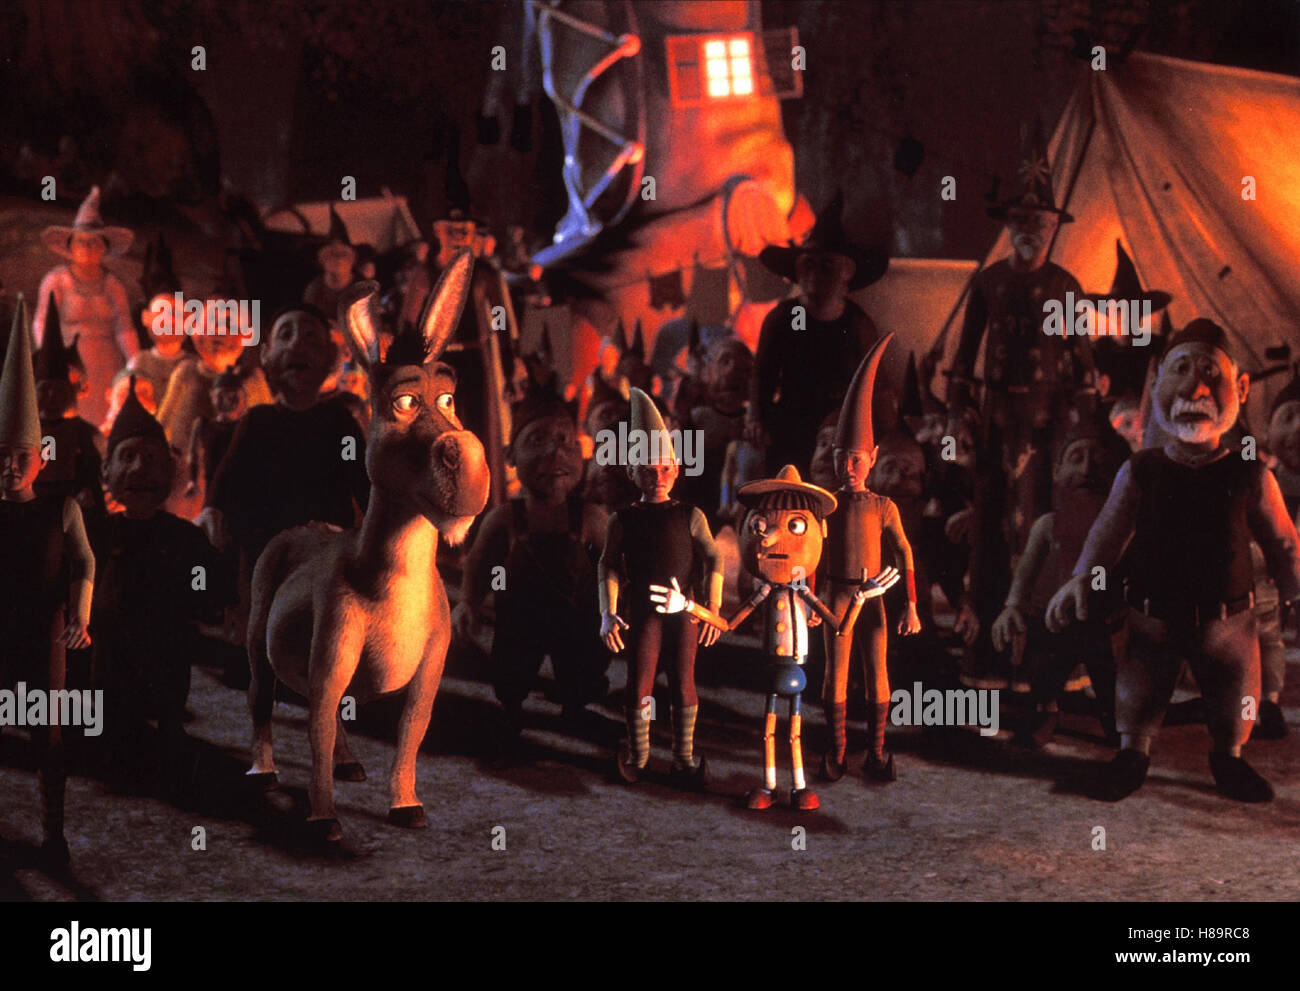 Shrek - Der tollkühne Held, (SHREK) USA 2001, Regie: Andrew Adamson, Vicky Jenson, Szene mit Donkey und Pinnochio, Stichwort: Esel, Pinocchio Stock Photo